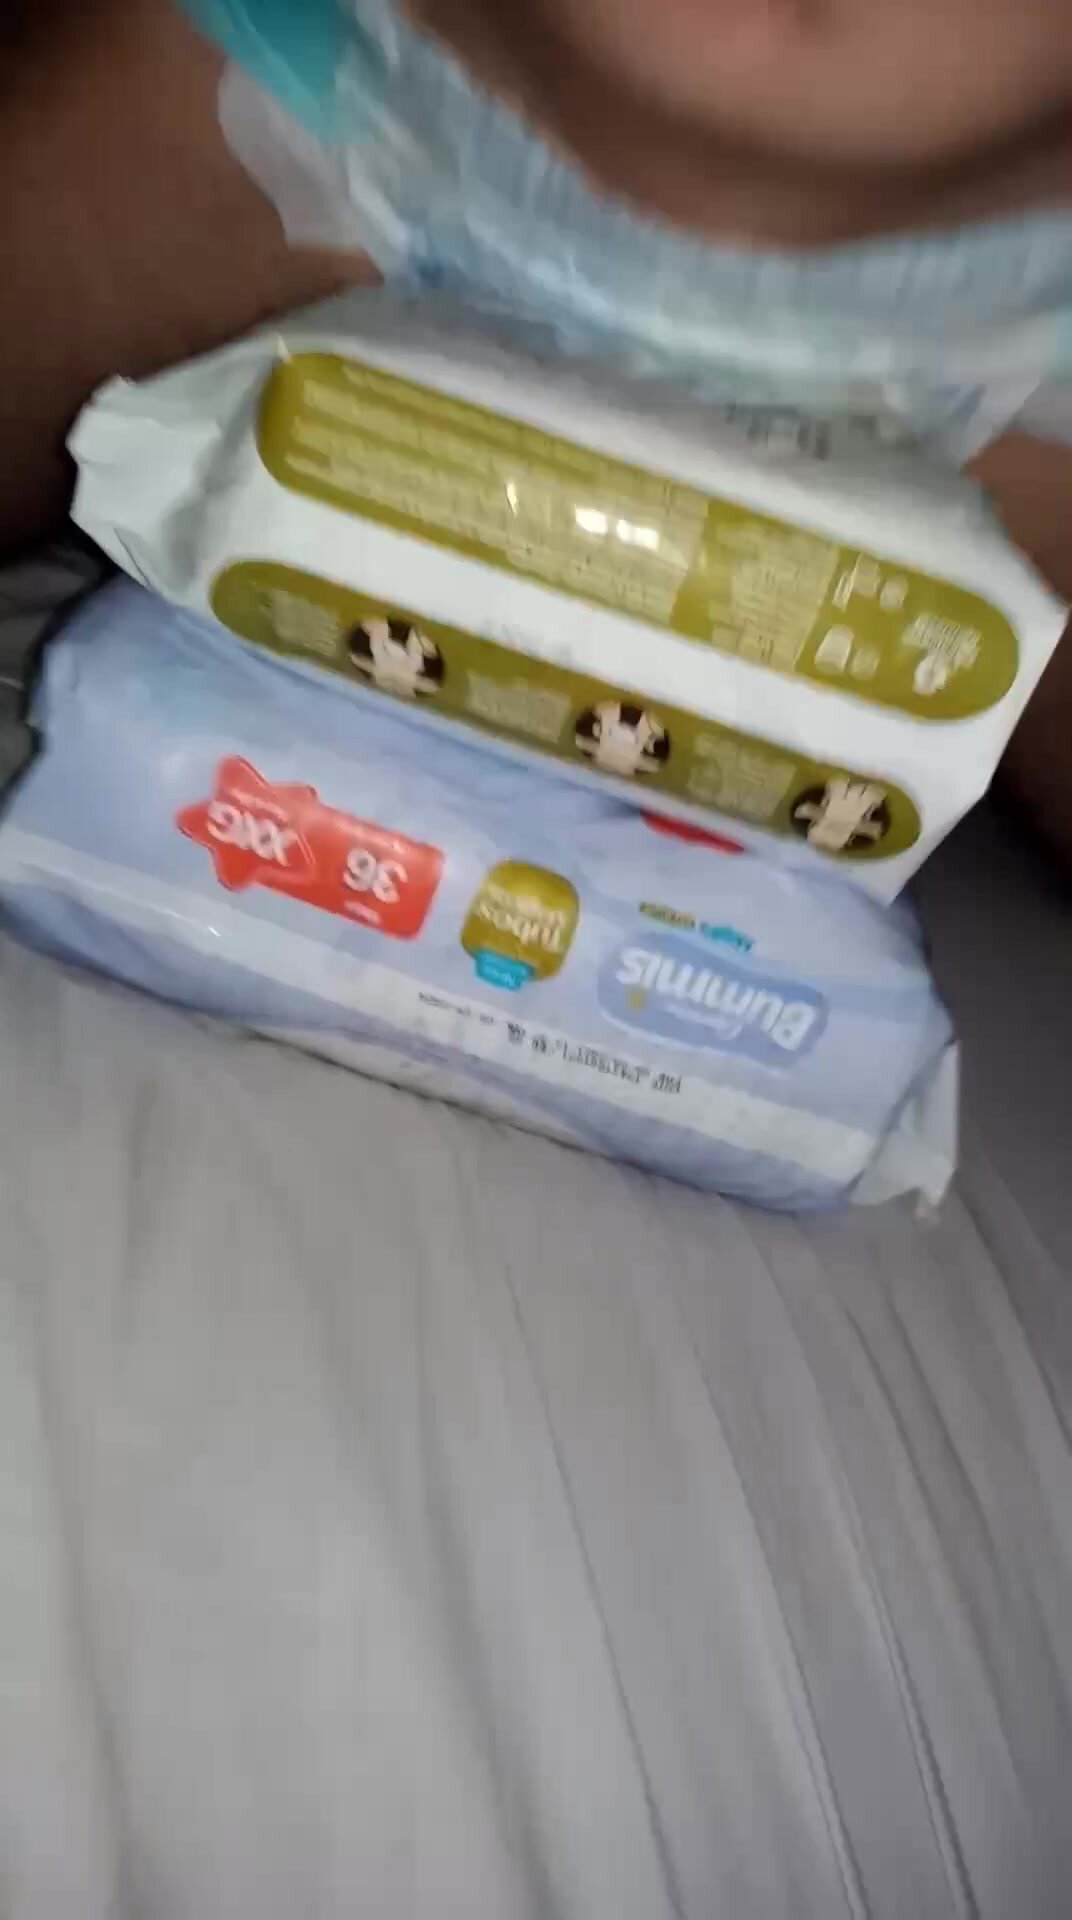 Humping my diaper packs